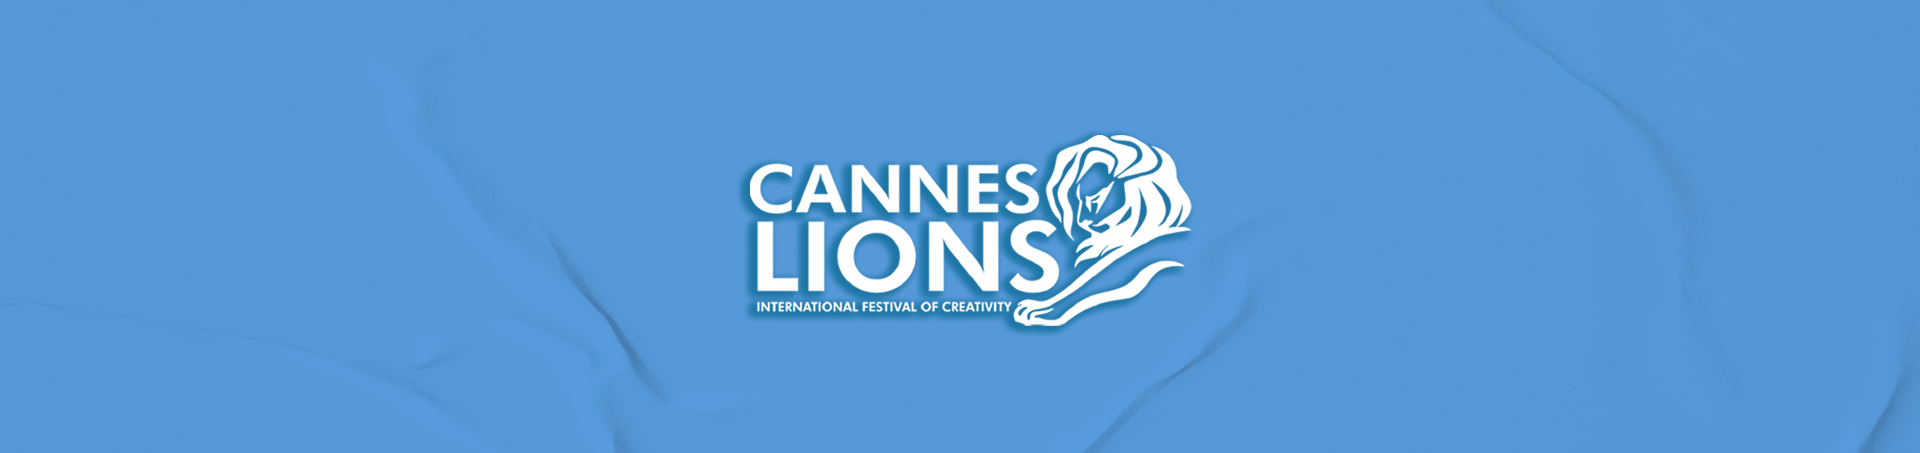 Italia da record al Festival della creatività più importante al mondo: Cannes Lions 2021